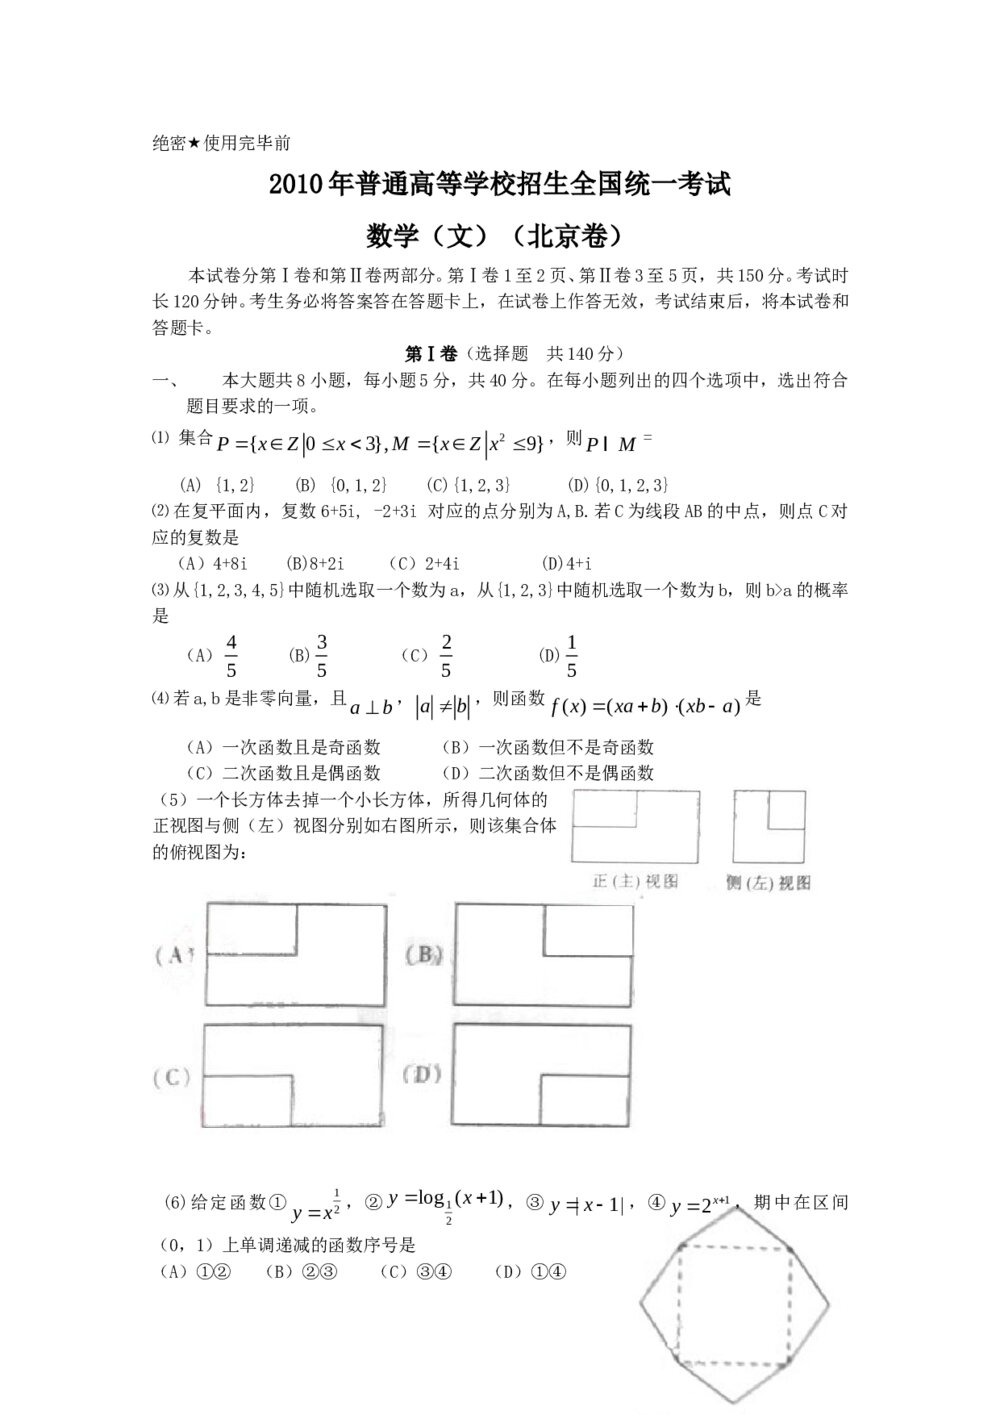 高考试题(北京卷)--数学文科+(参考答案)1